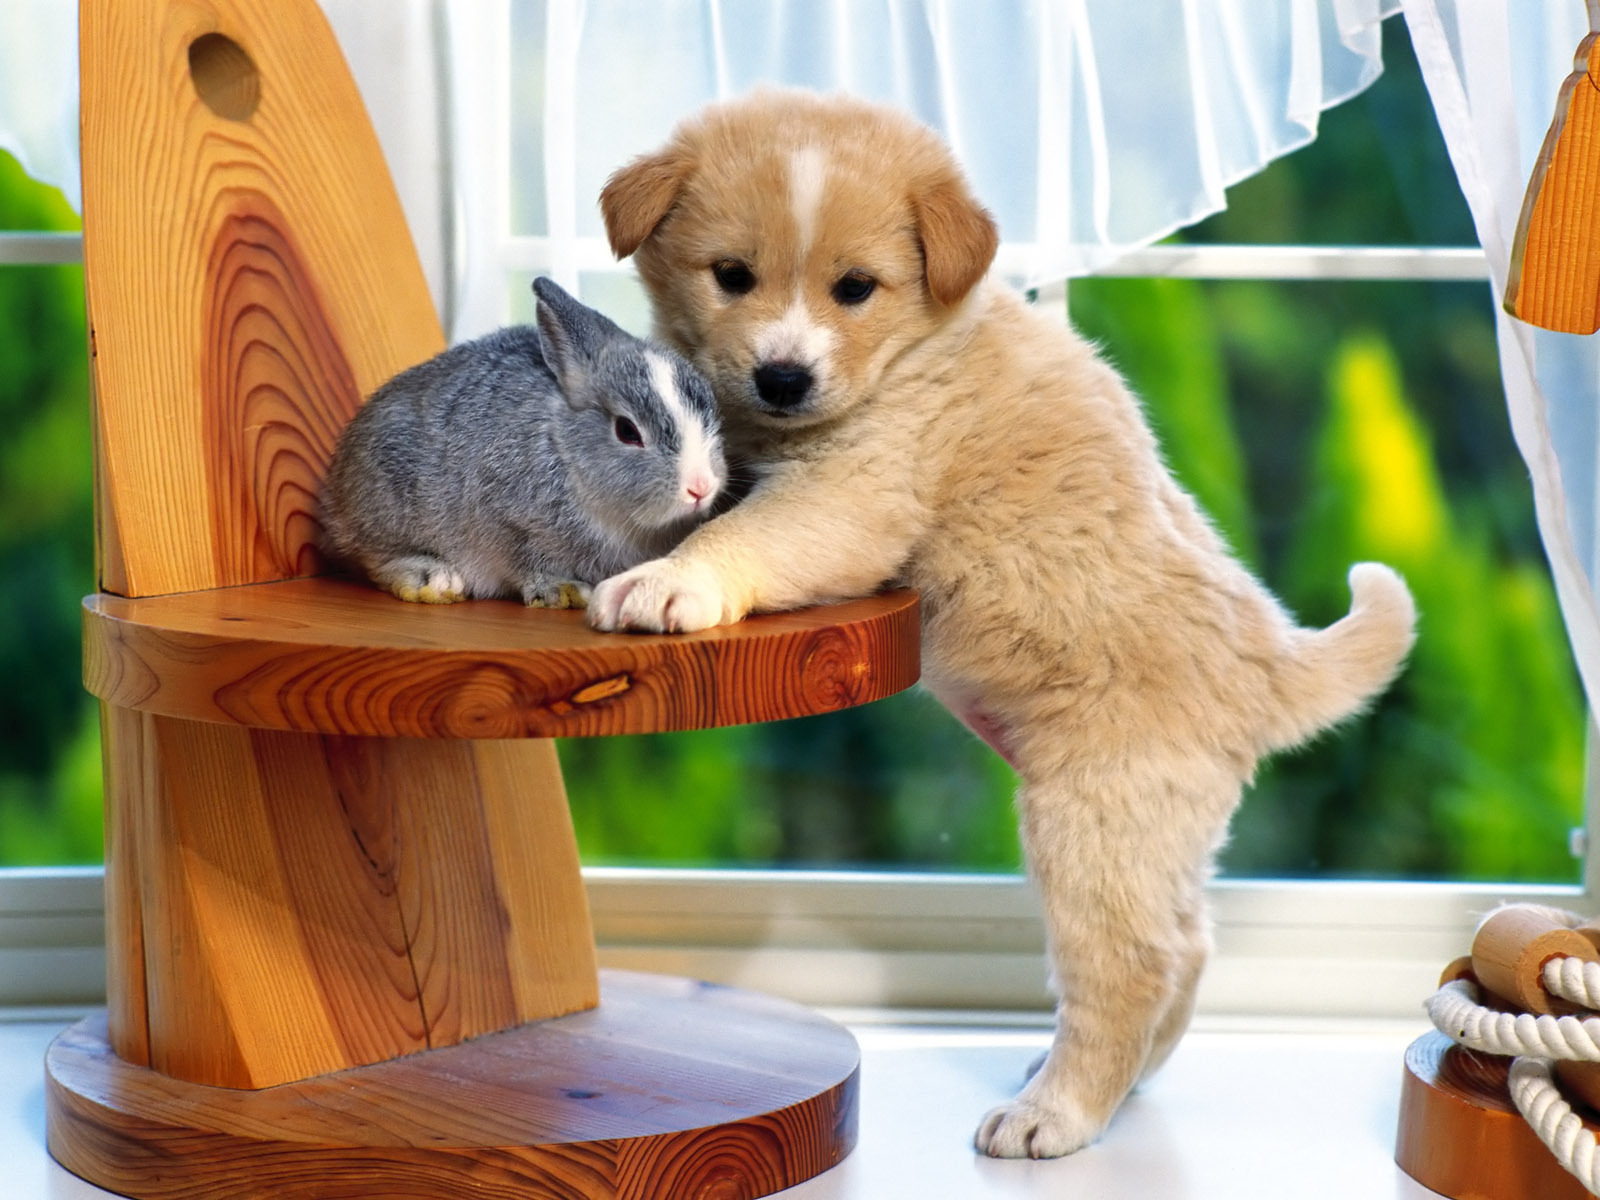 Cute Little Puppy Wallpaper - Dog And A Rabbit , HD Wallpaper & Backgrounds